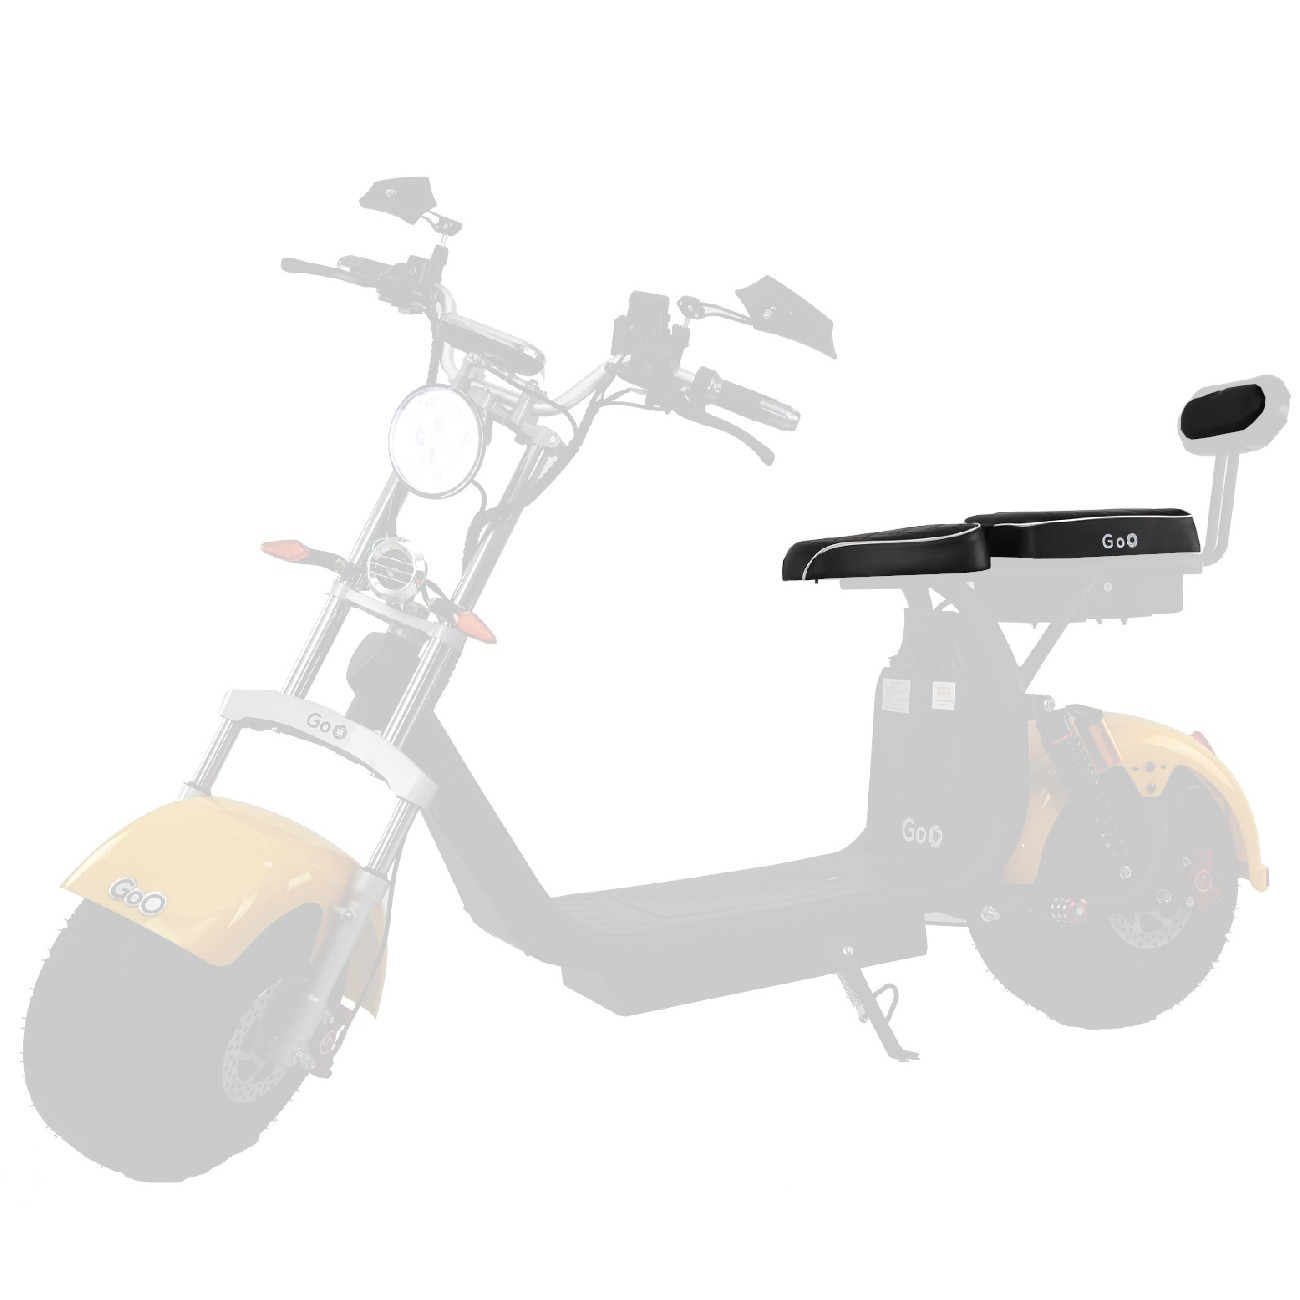 KIT Banco X10 personalizado scooter eletrica citycoco x11 x12